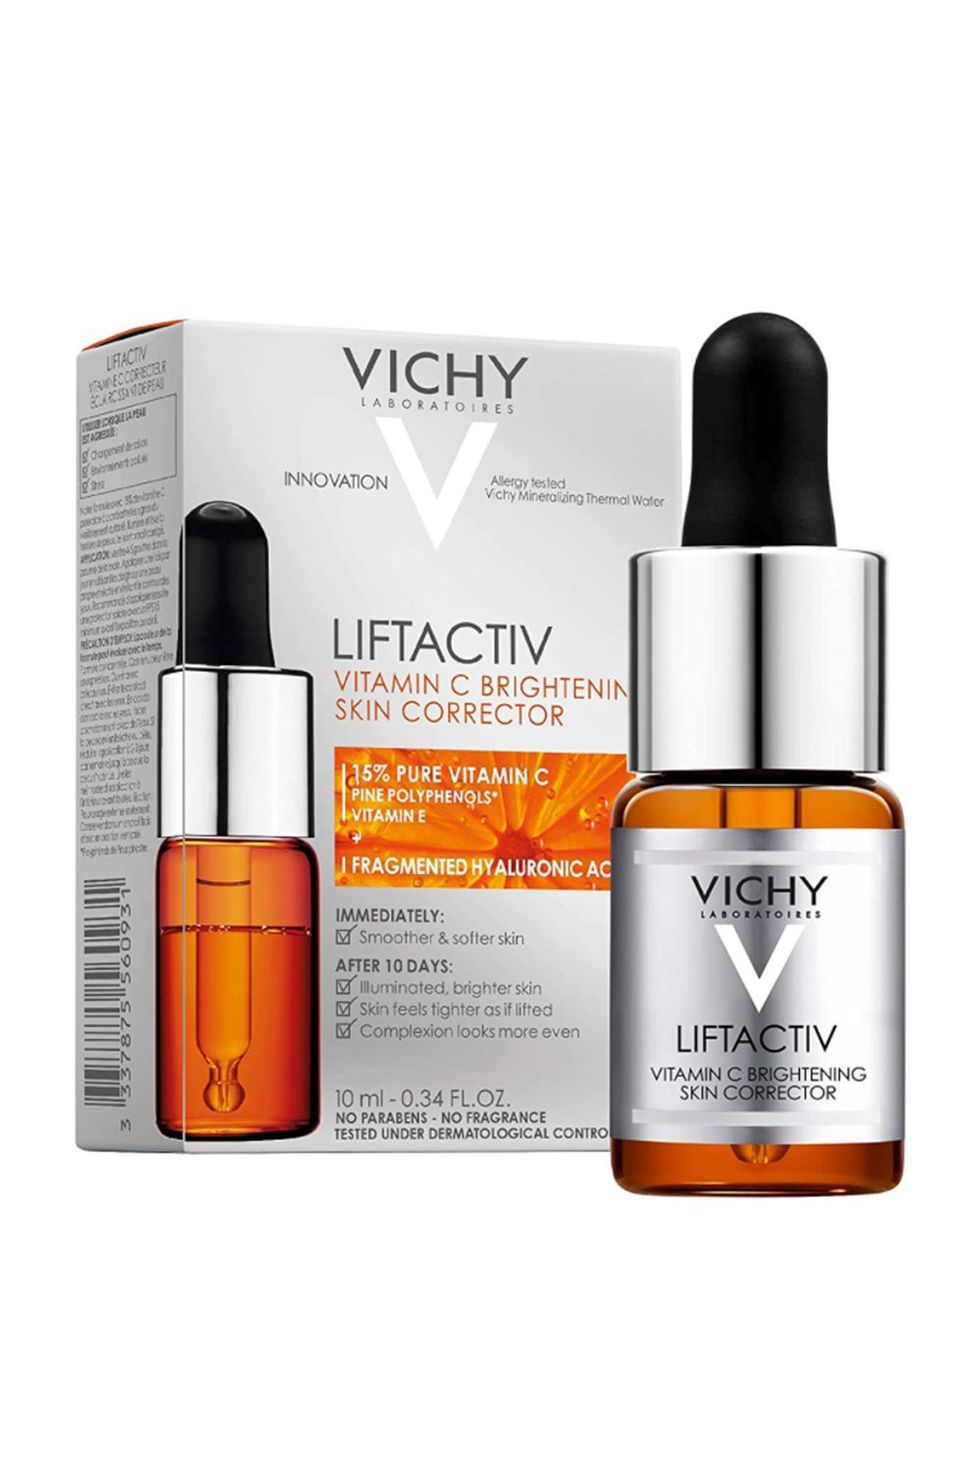 LiftActiv Vitamin C Brightening Skin Corrector